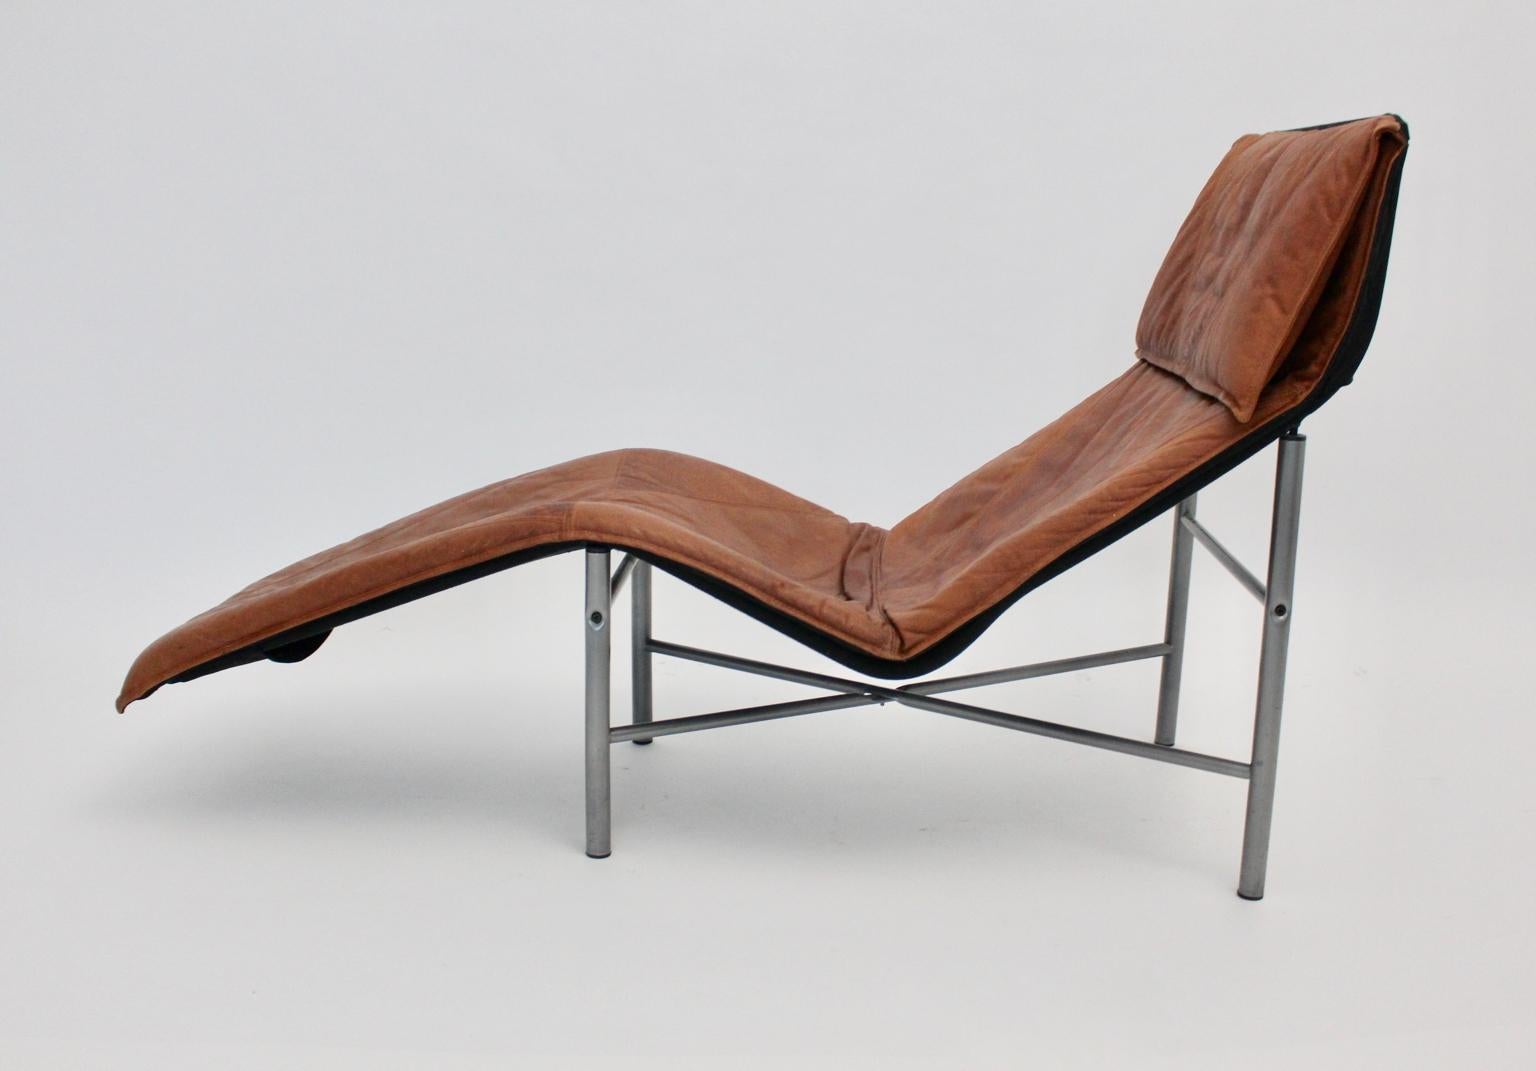 Diese Vintage-Chaiselongue von Tord Bjorklund, 1970, Schweden, vereint Komfort und zeitloses Design.
Die Polsterung der Chaiselongue wurde mit cognacfarbenem Leder bezogen und weist eine tolle Lederpatina auf.
Auch der Sockel wurde aus grau